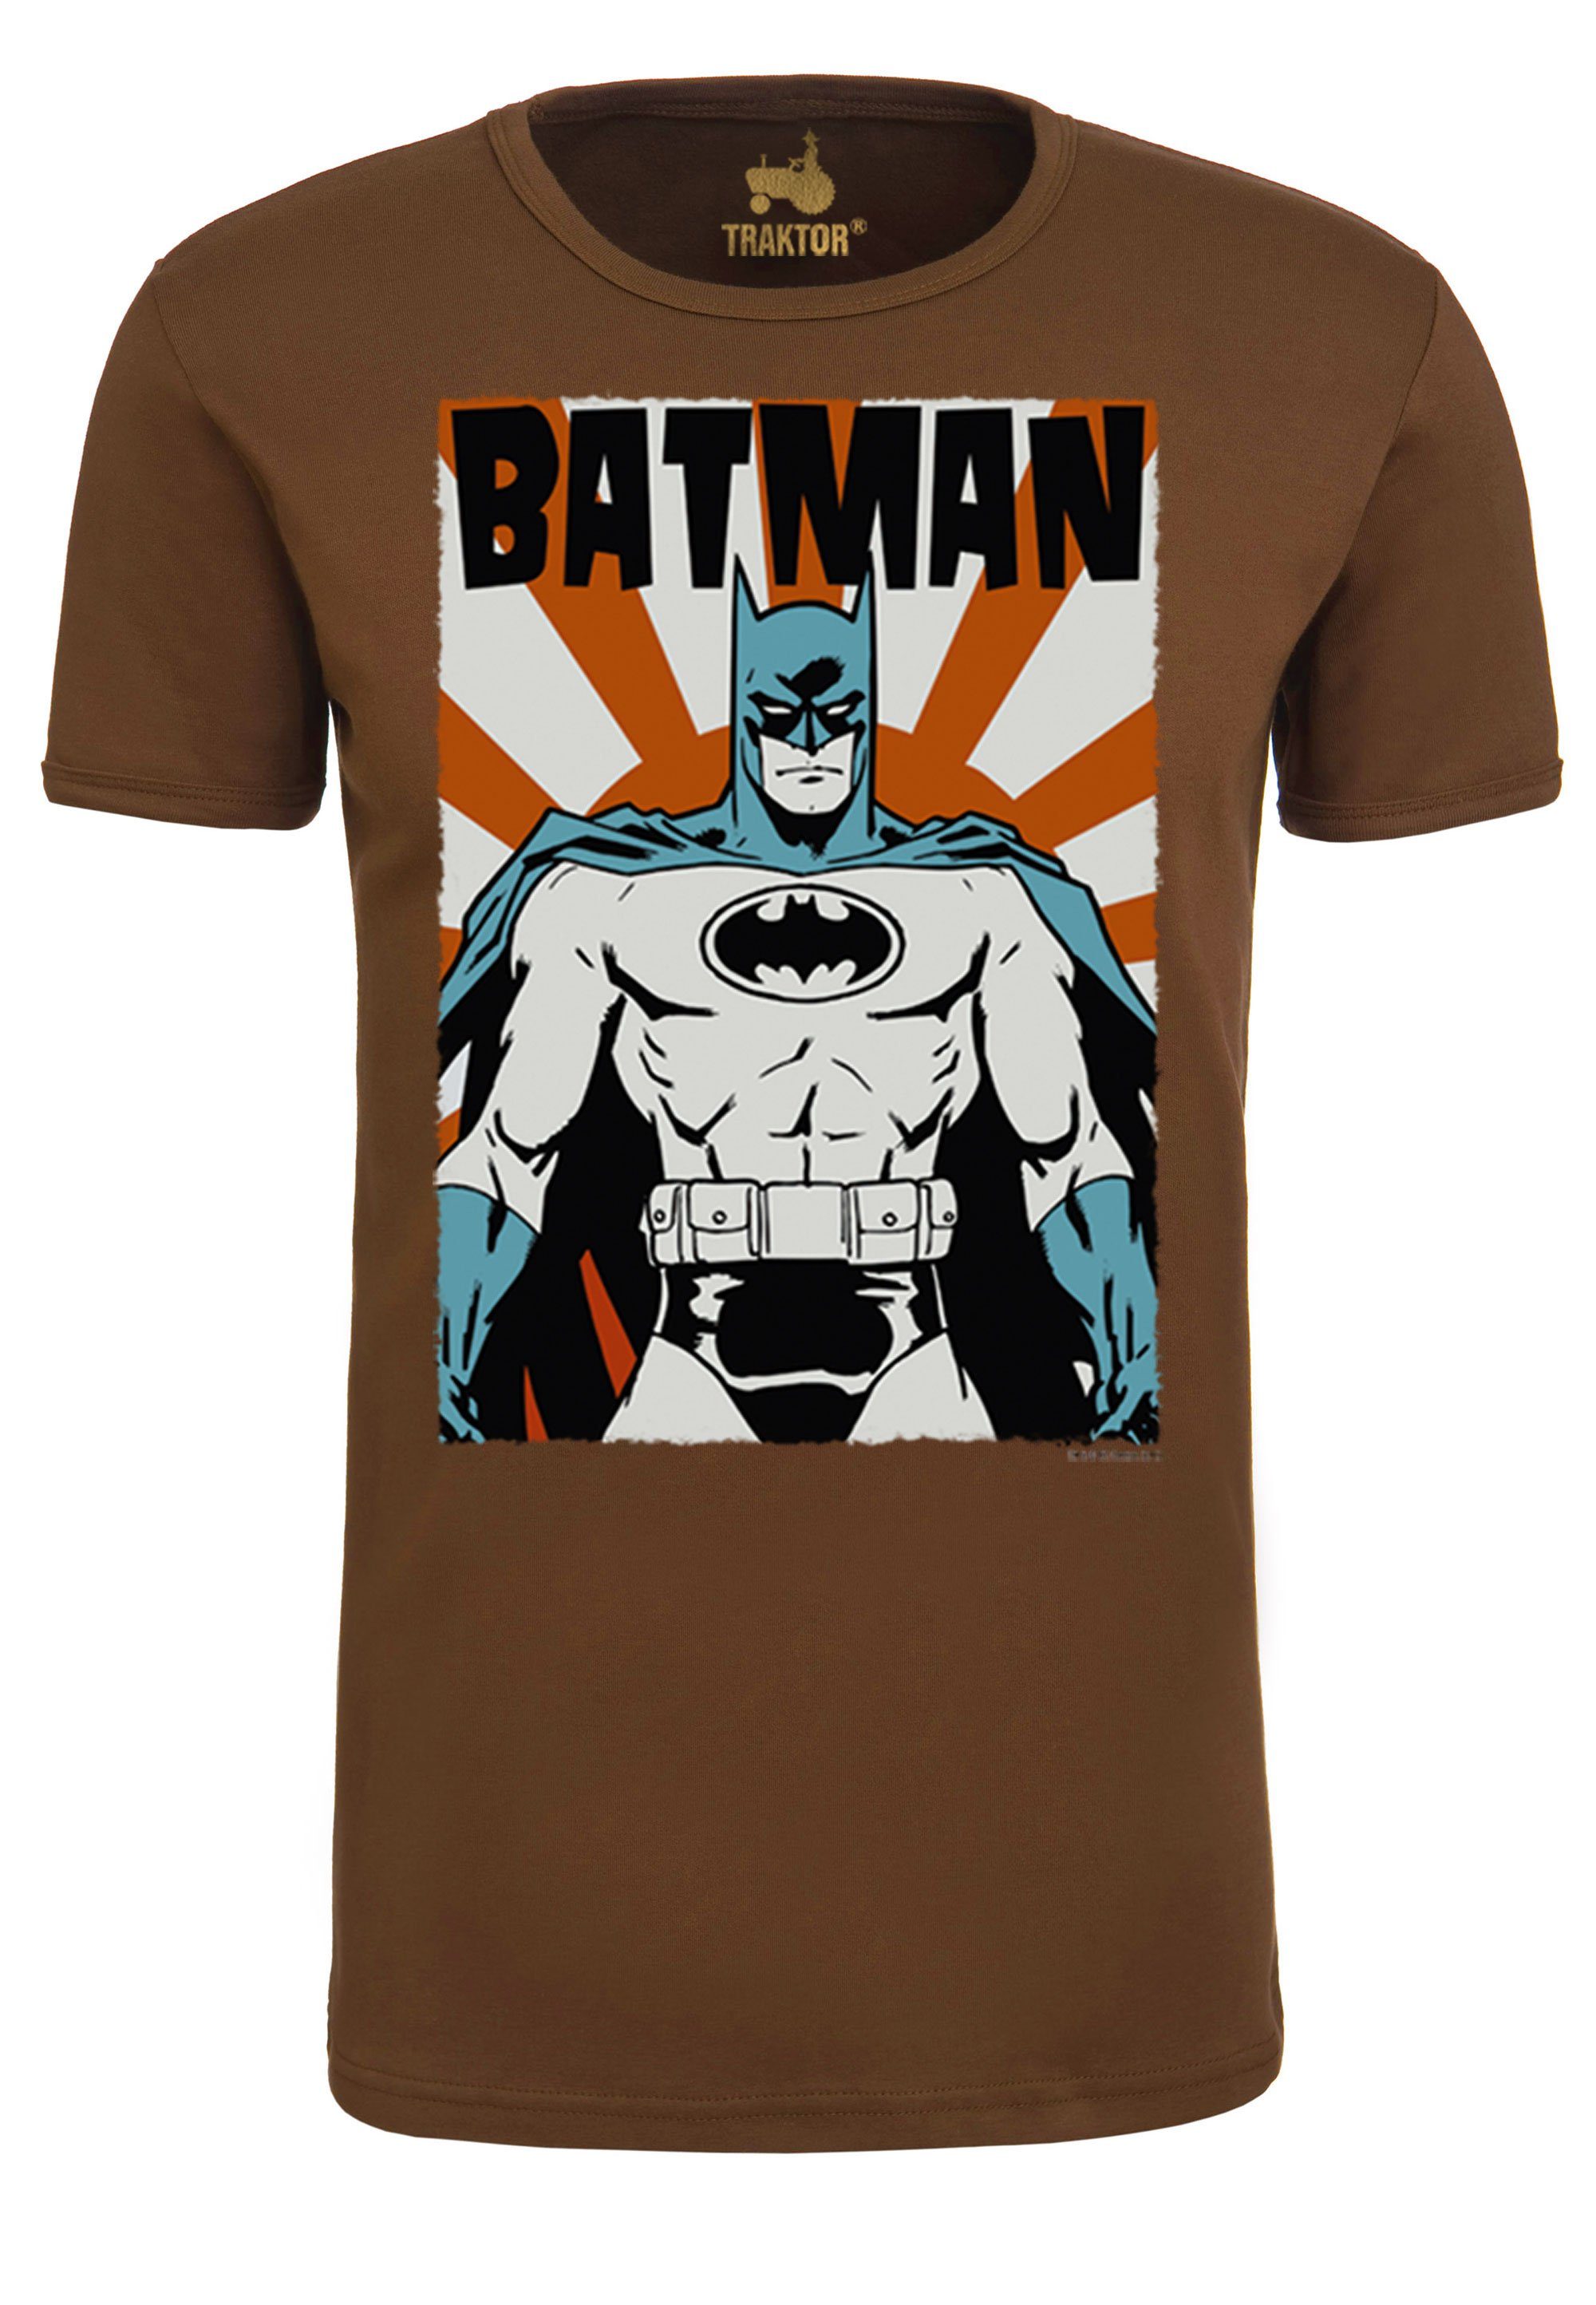 braun Poster T-Shirt Batman - LOGOSHIRT trendigem mit Superhelden-Print